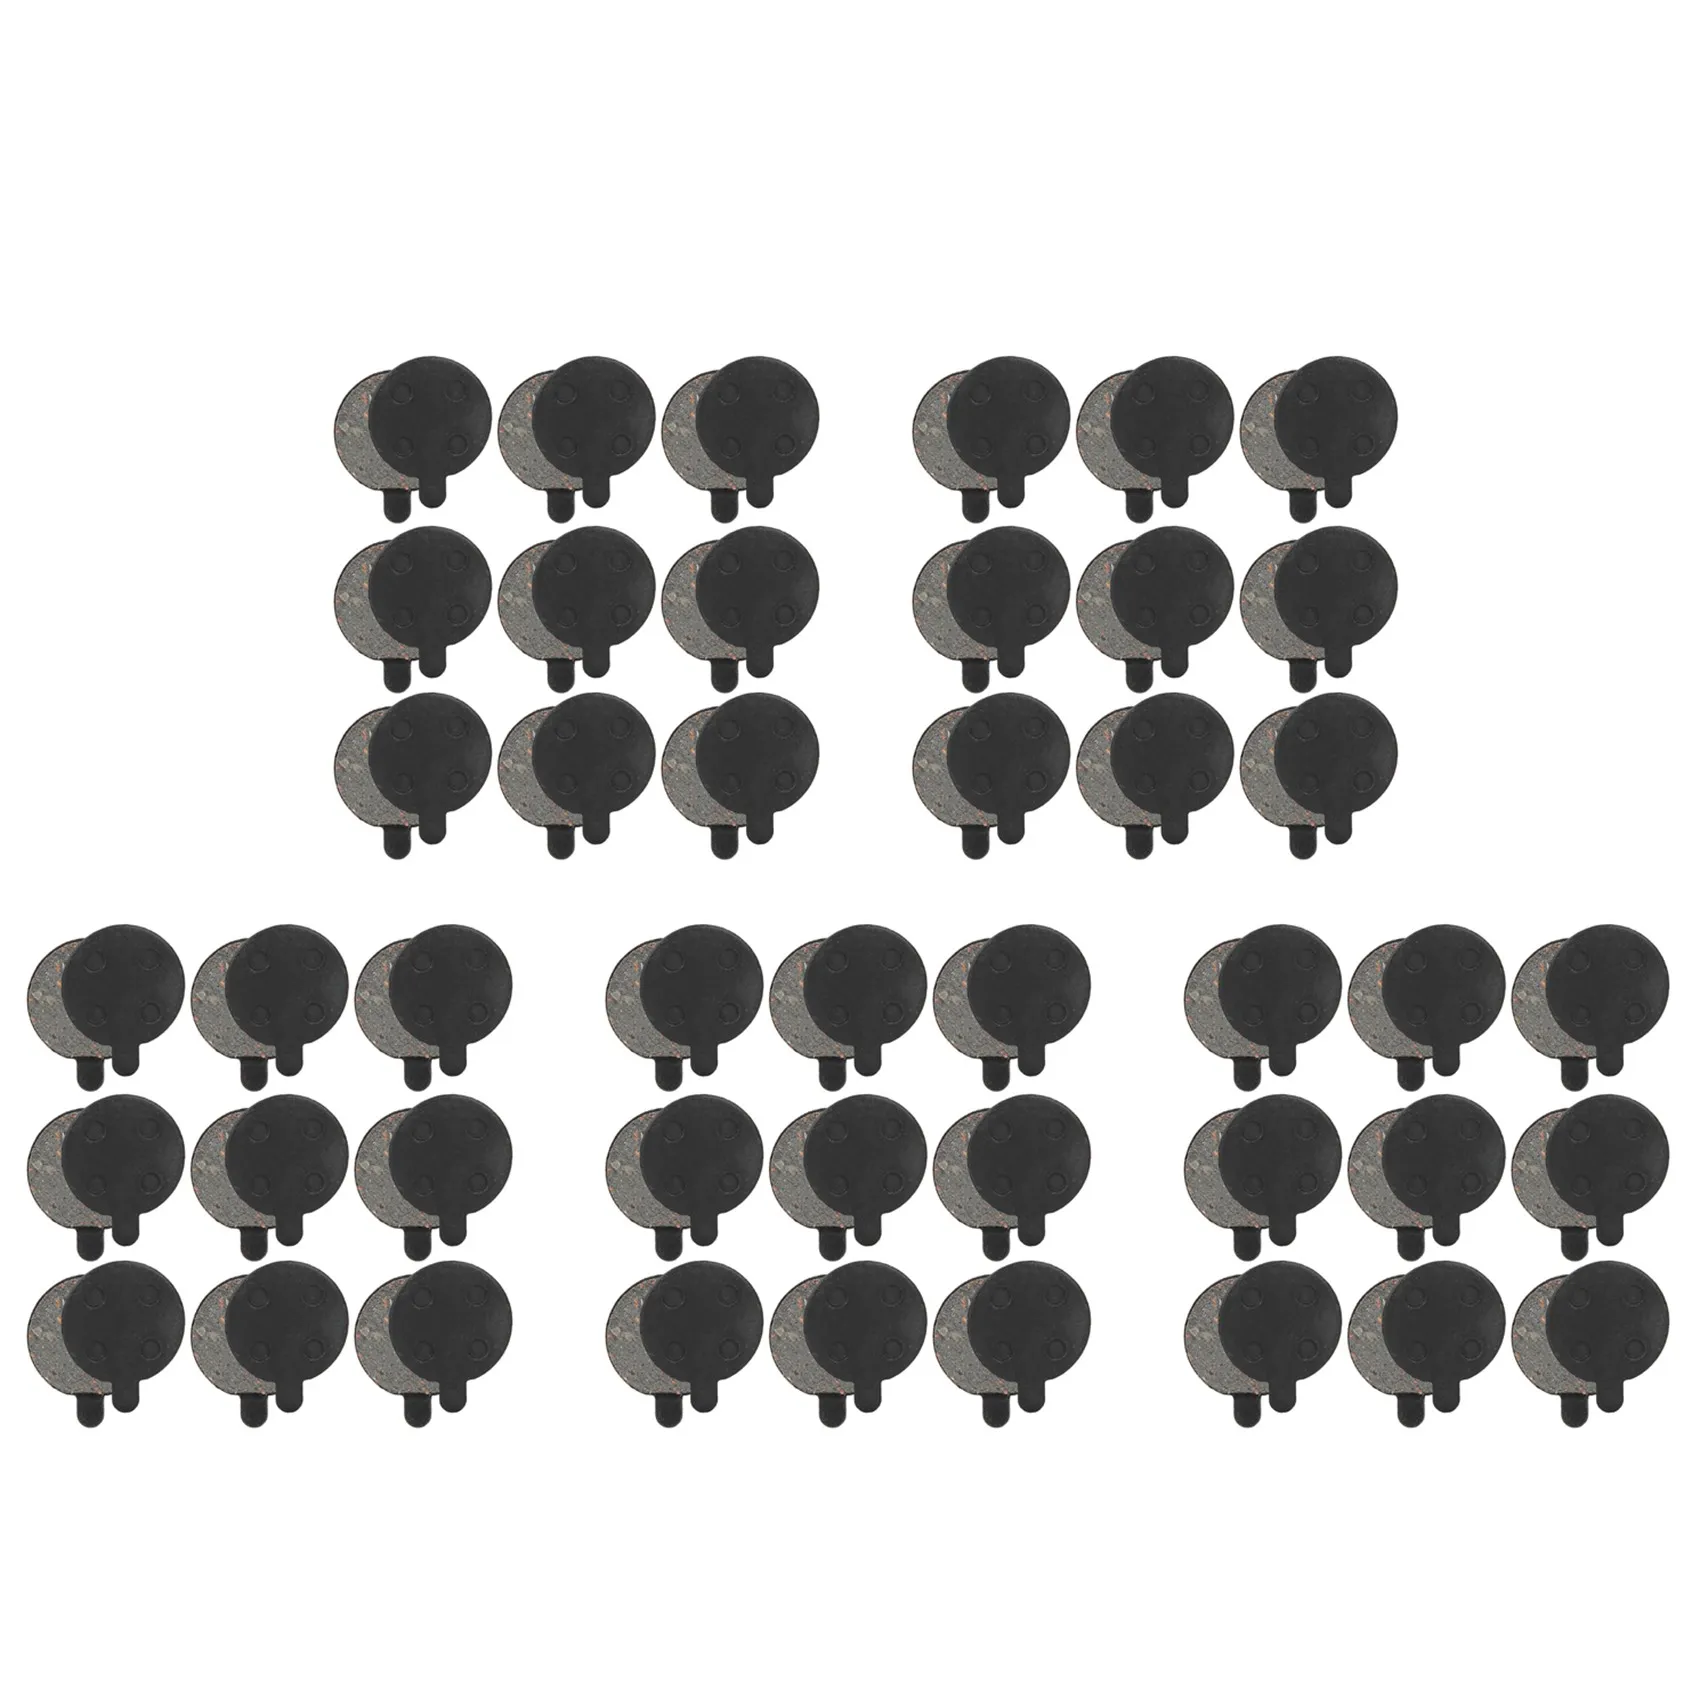 

Дисковые Тормозные колодки для скутера, семиметаллические Запчасти для скутера Xiaomi M365Pro, 45 пар